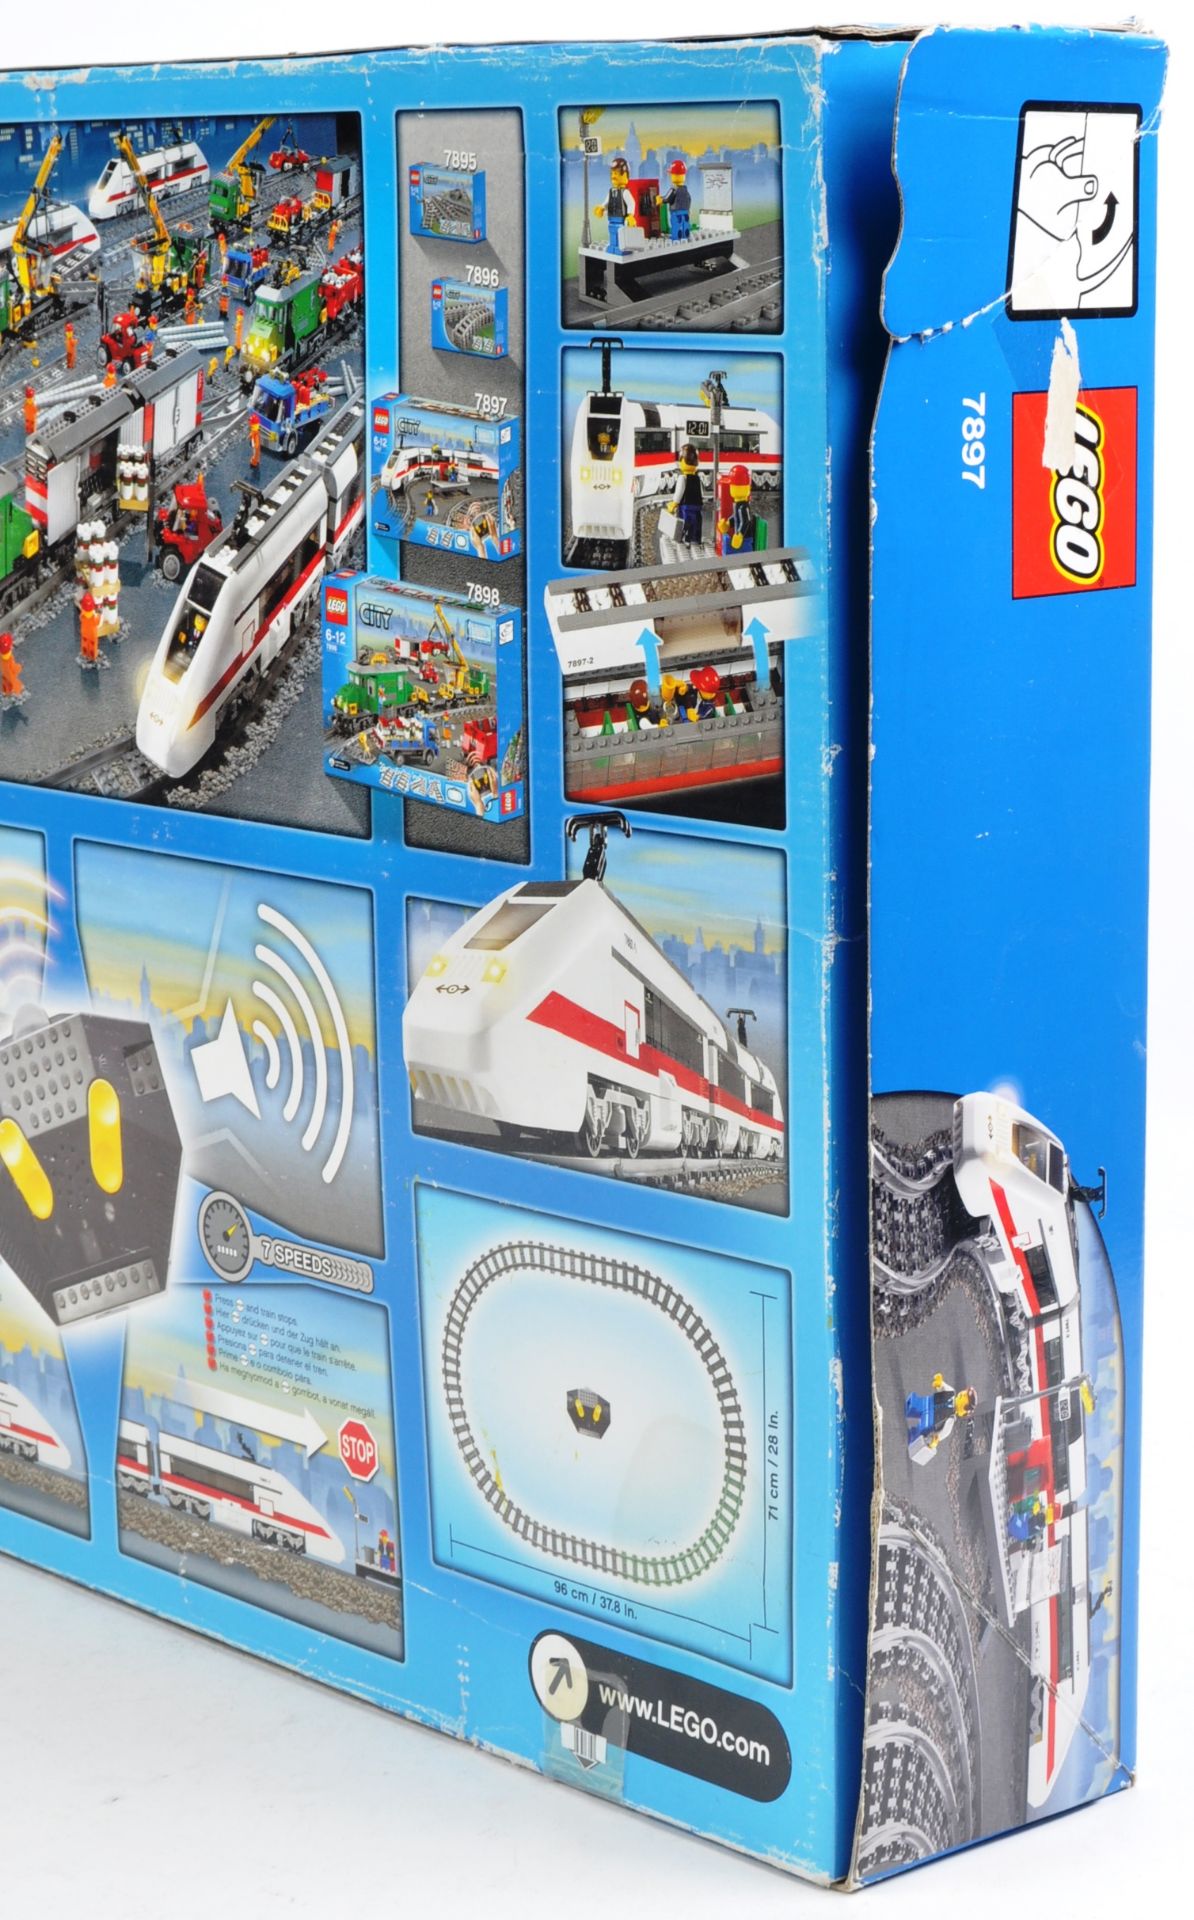 LEGO SET - LEGO CITY - 7897 - PASSENGER TRAIN - Image 3 of 4